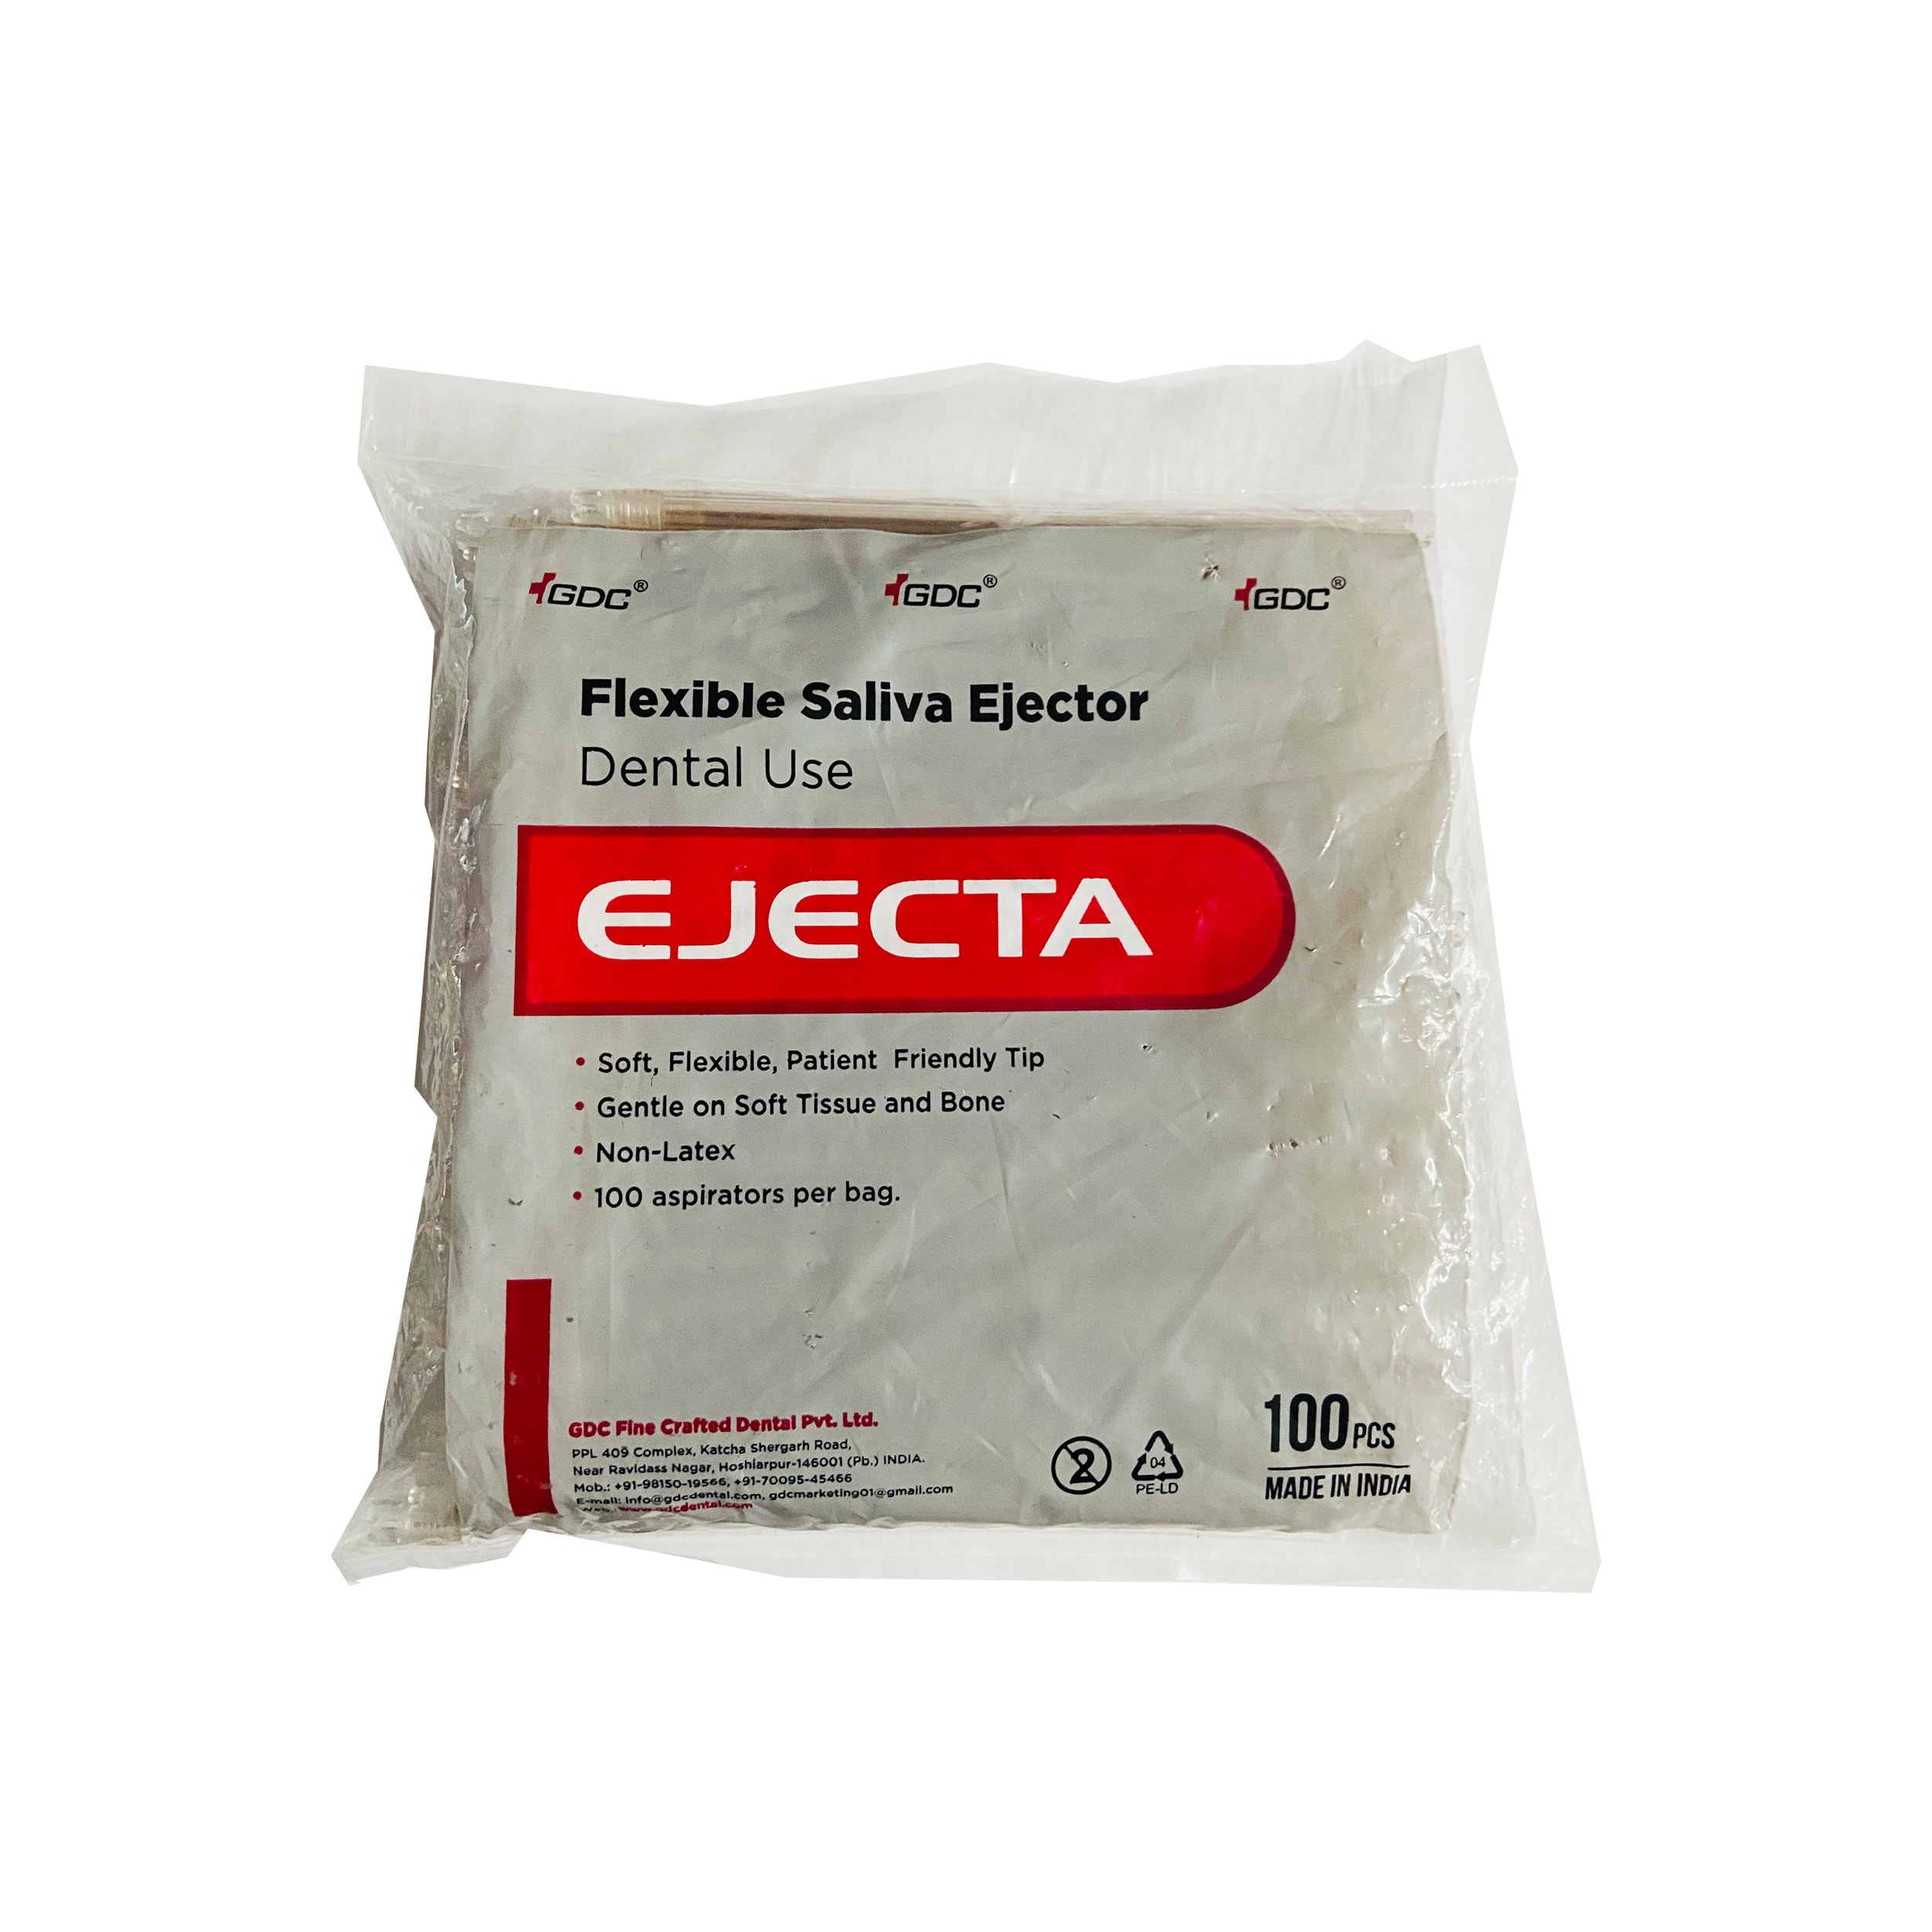 GDC Flexible Saliva Ejector (EJECTA) 100 pcs